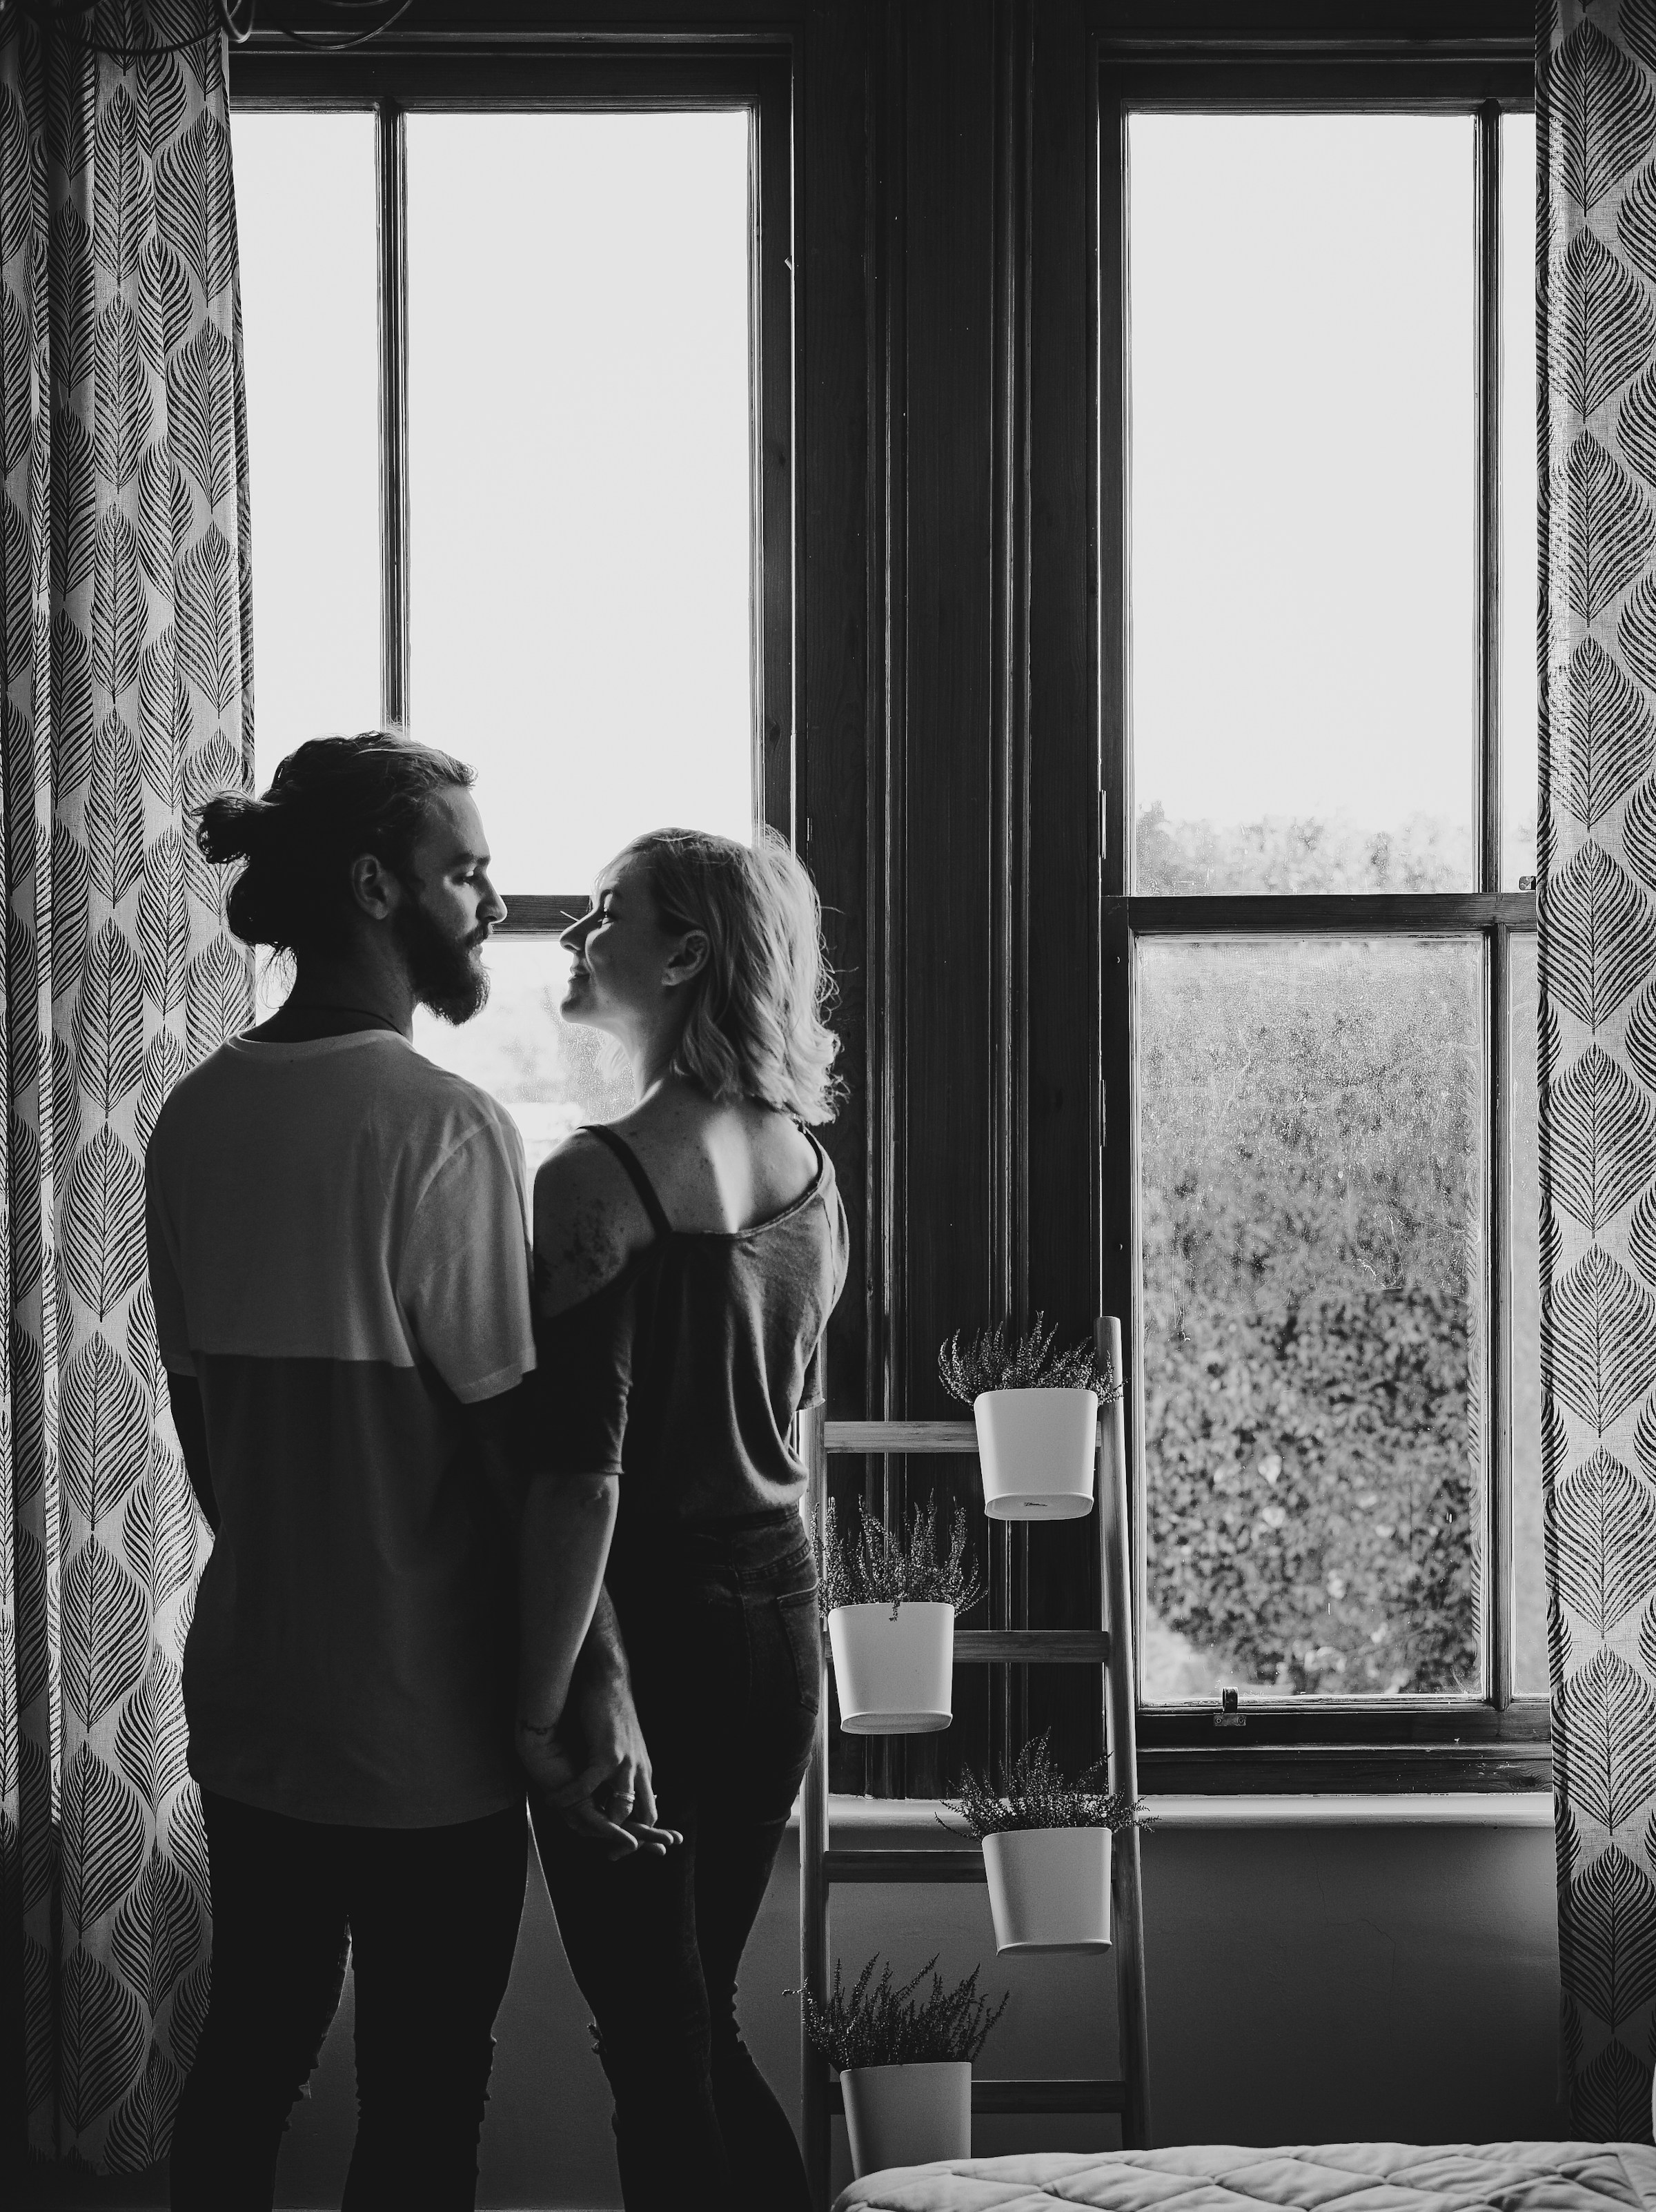 Ein lächelndes Paar, das an einem Fenster steht | Quelle: Unsplash